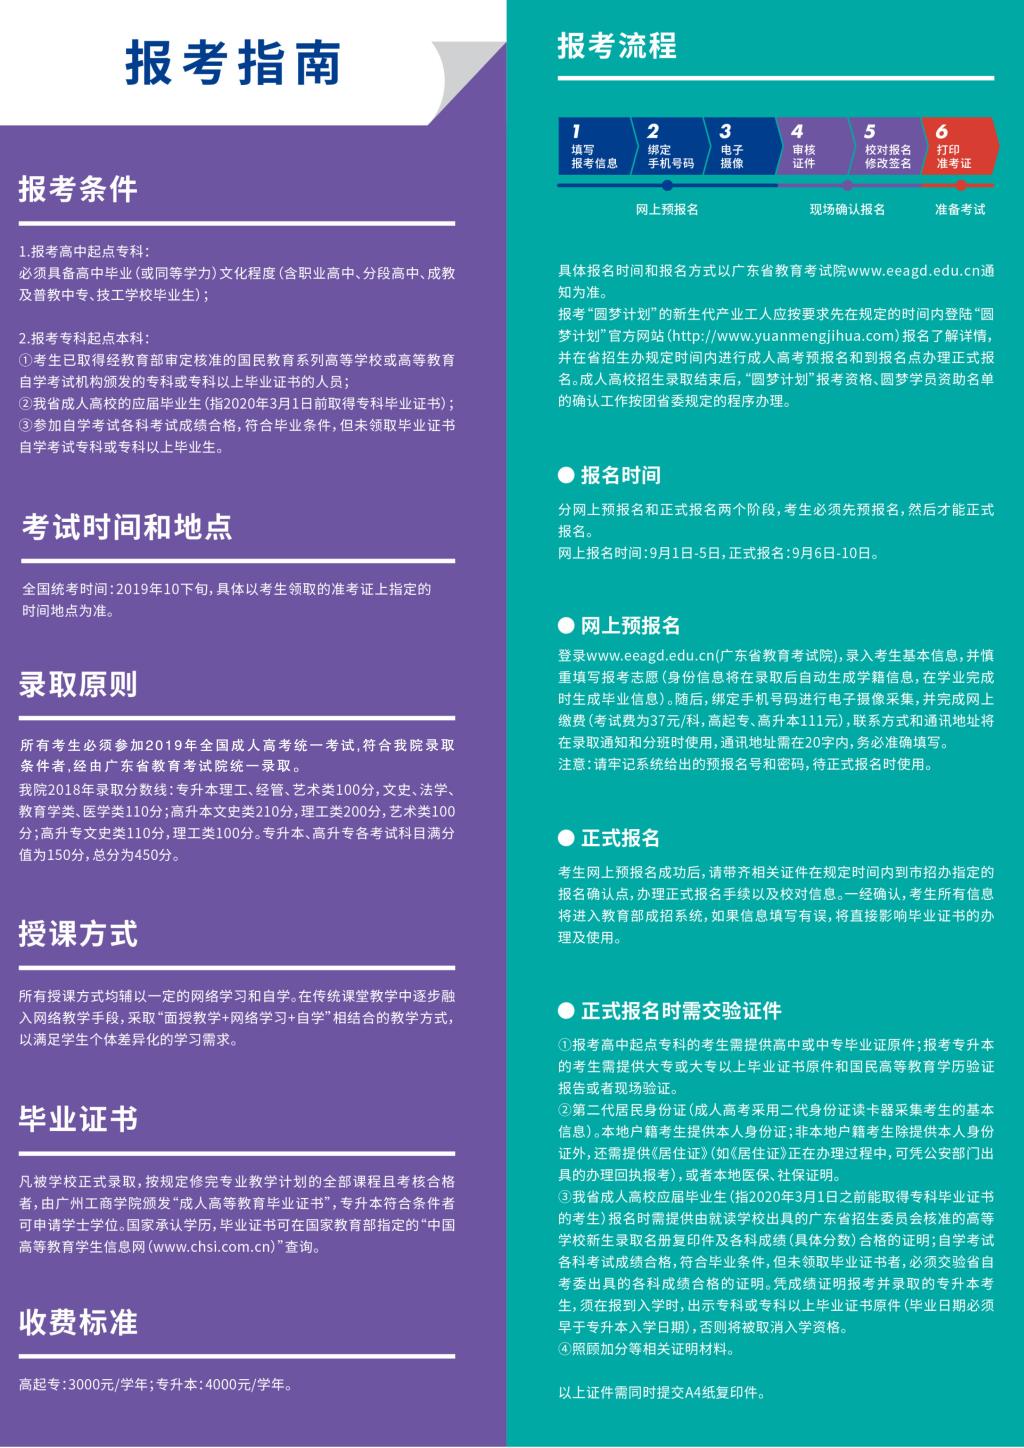 广州工商学院2020年成人教育招生简章